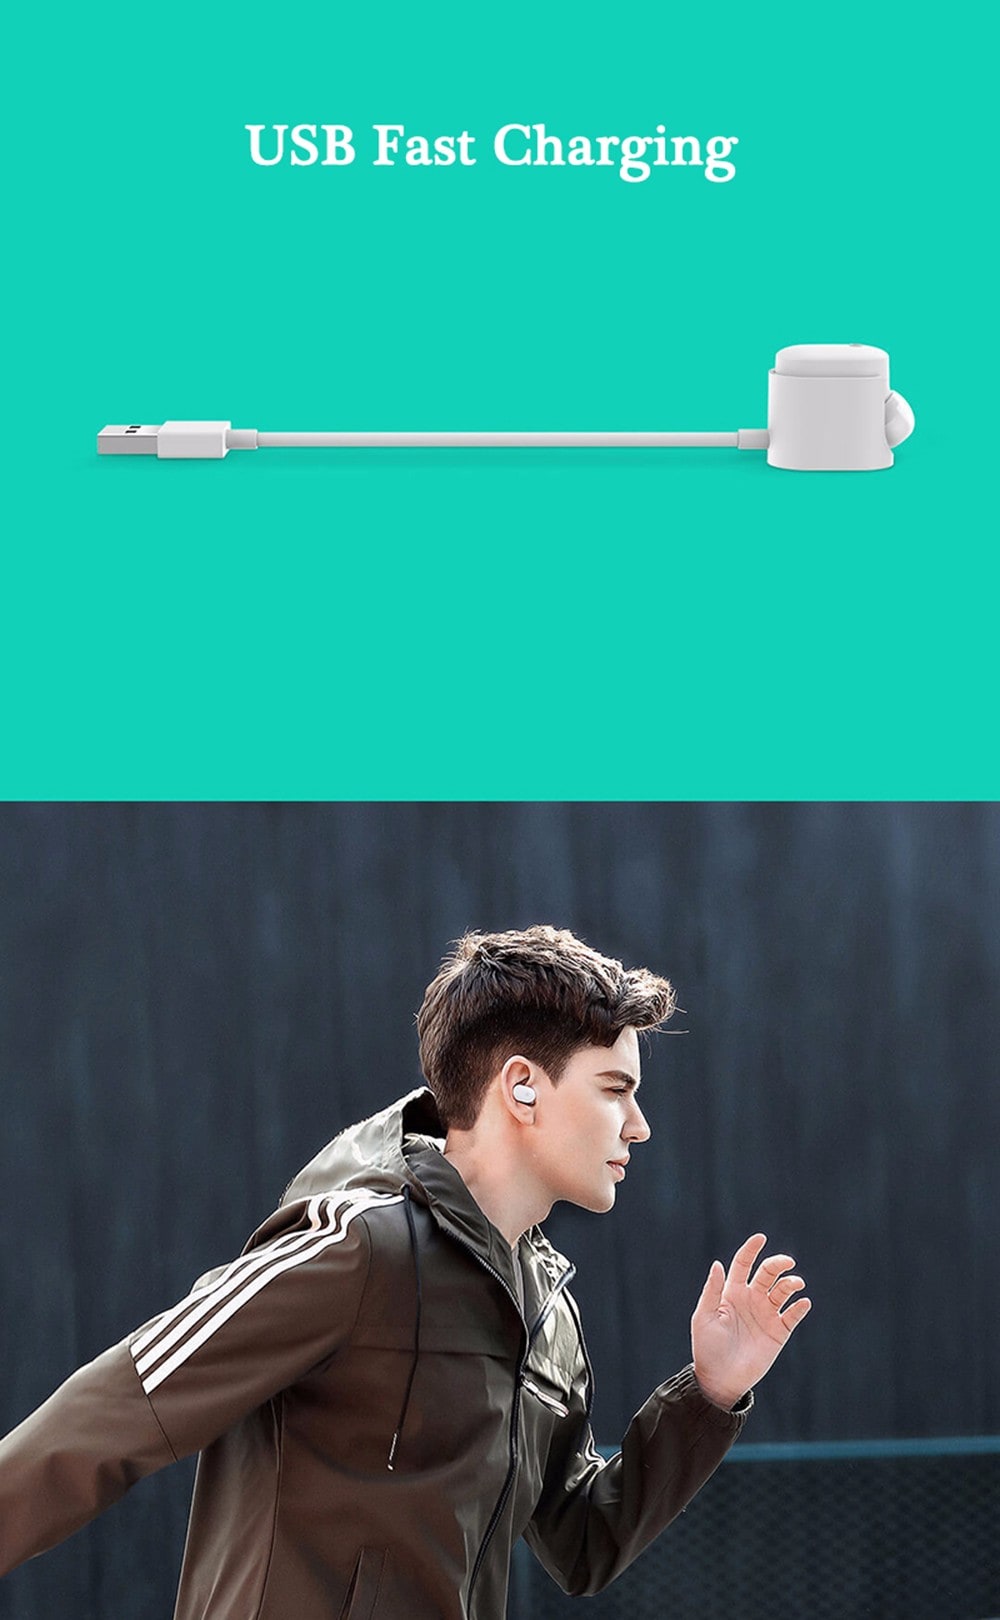 Xiaomi Wireless Bluetooth In-ear Headset